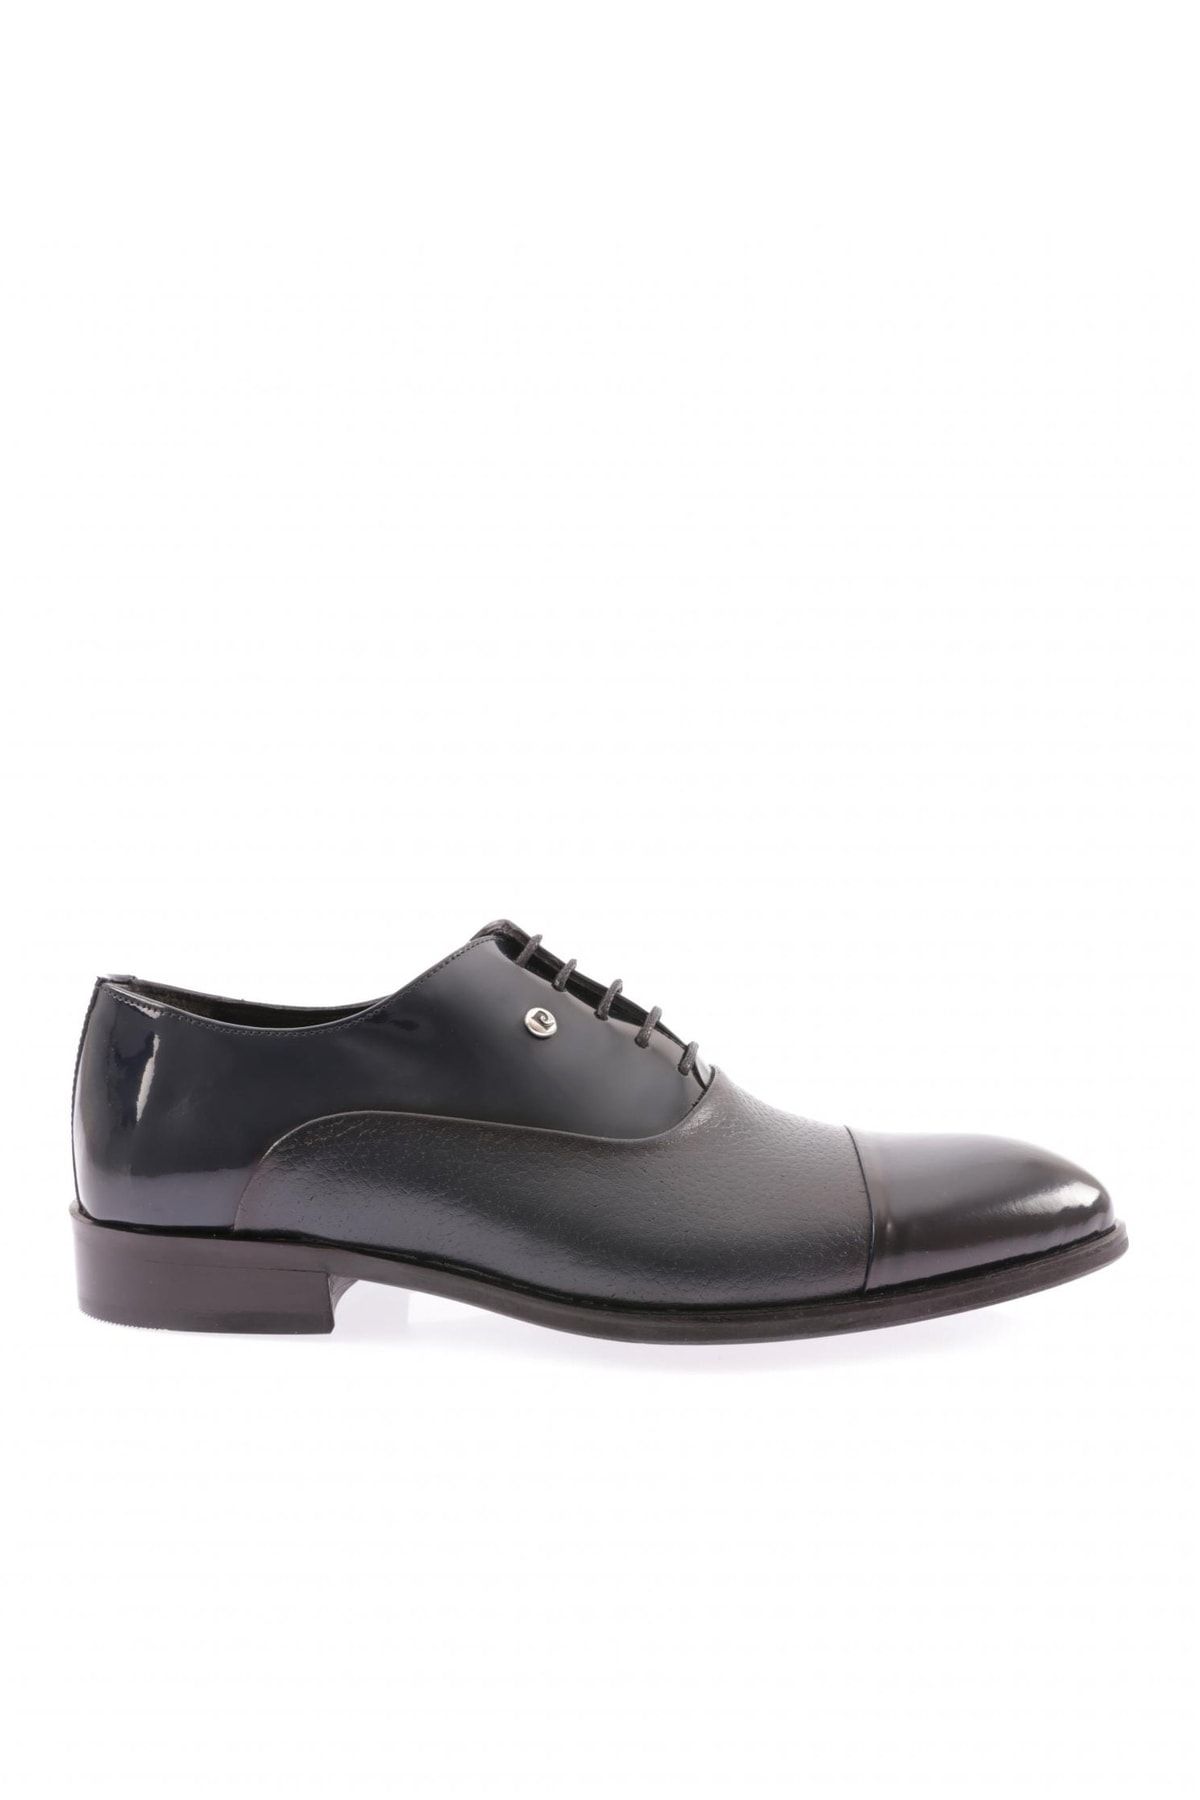 Pierre Cardin 120660-22k Erkek Klasik Ayakkabı